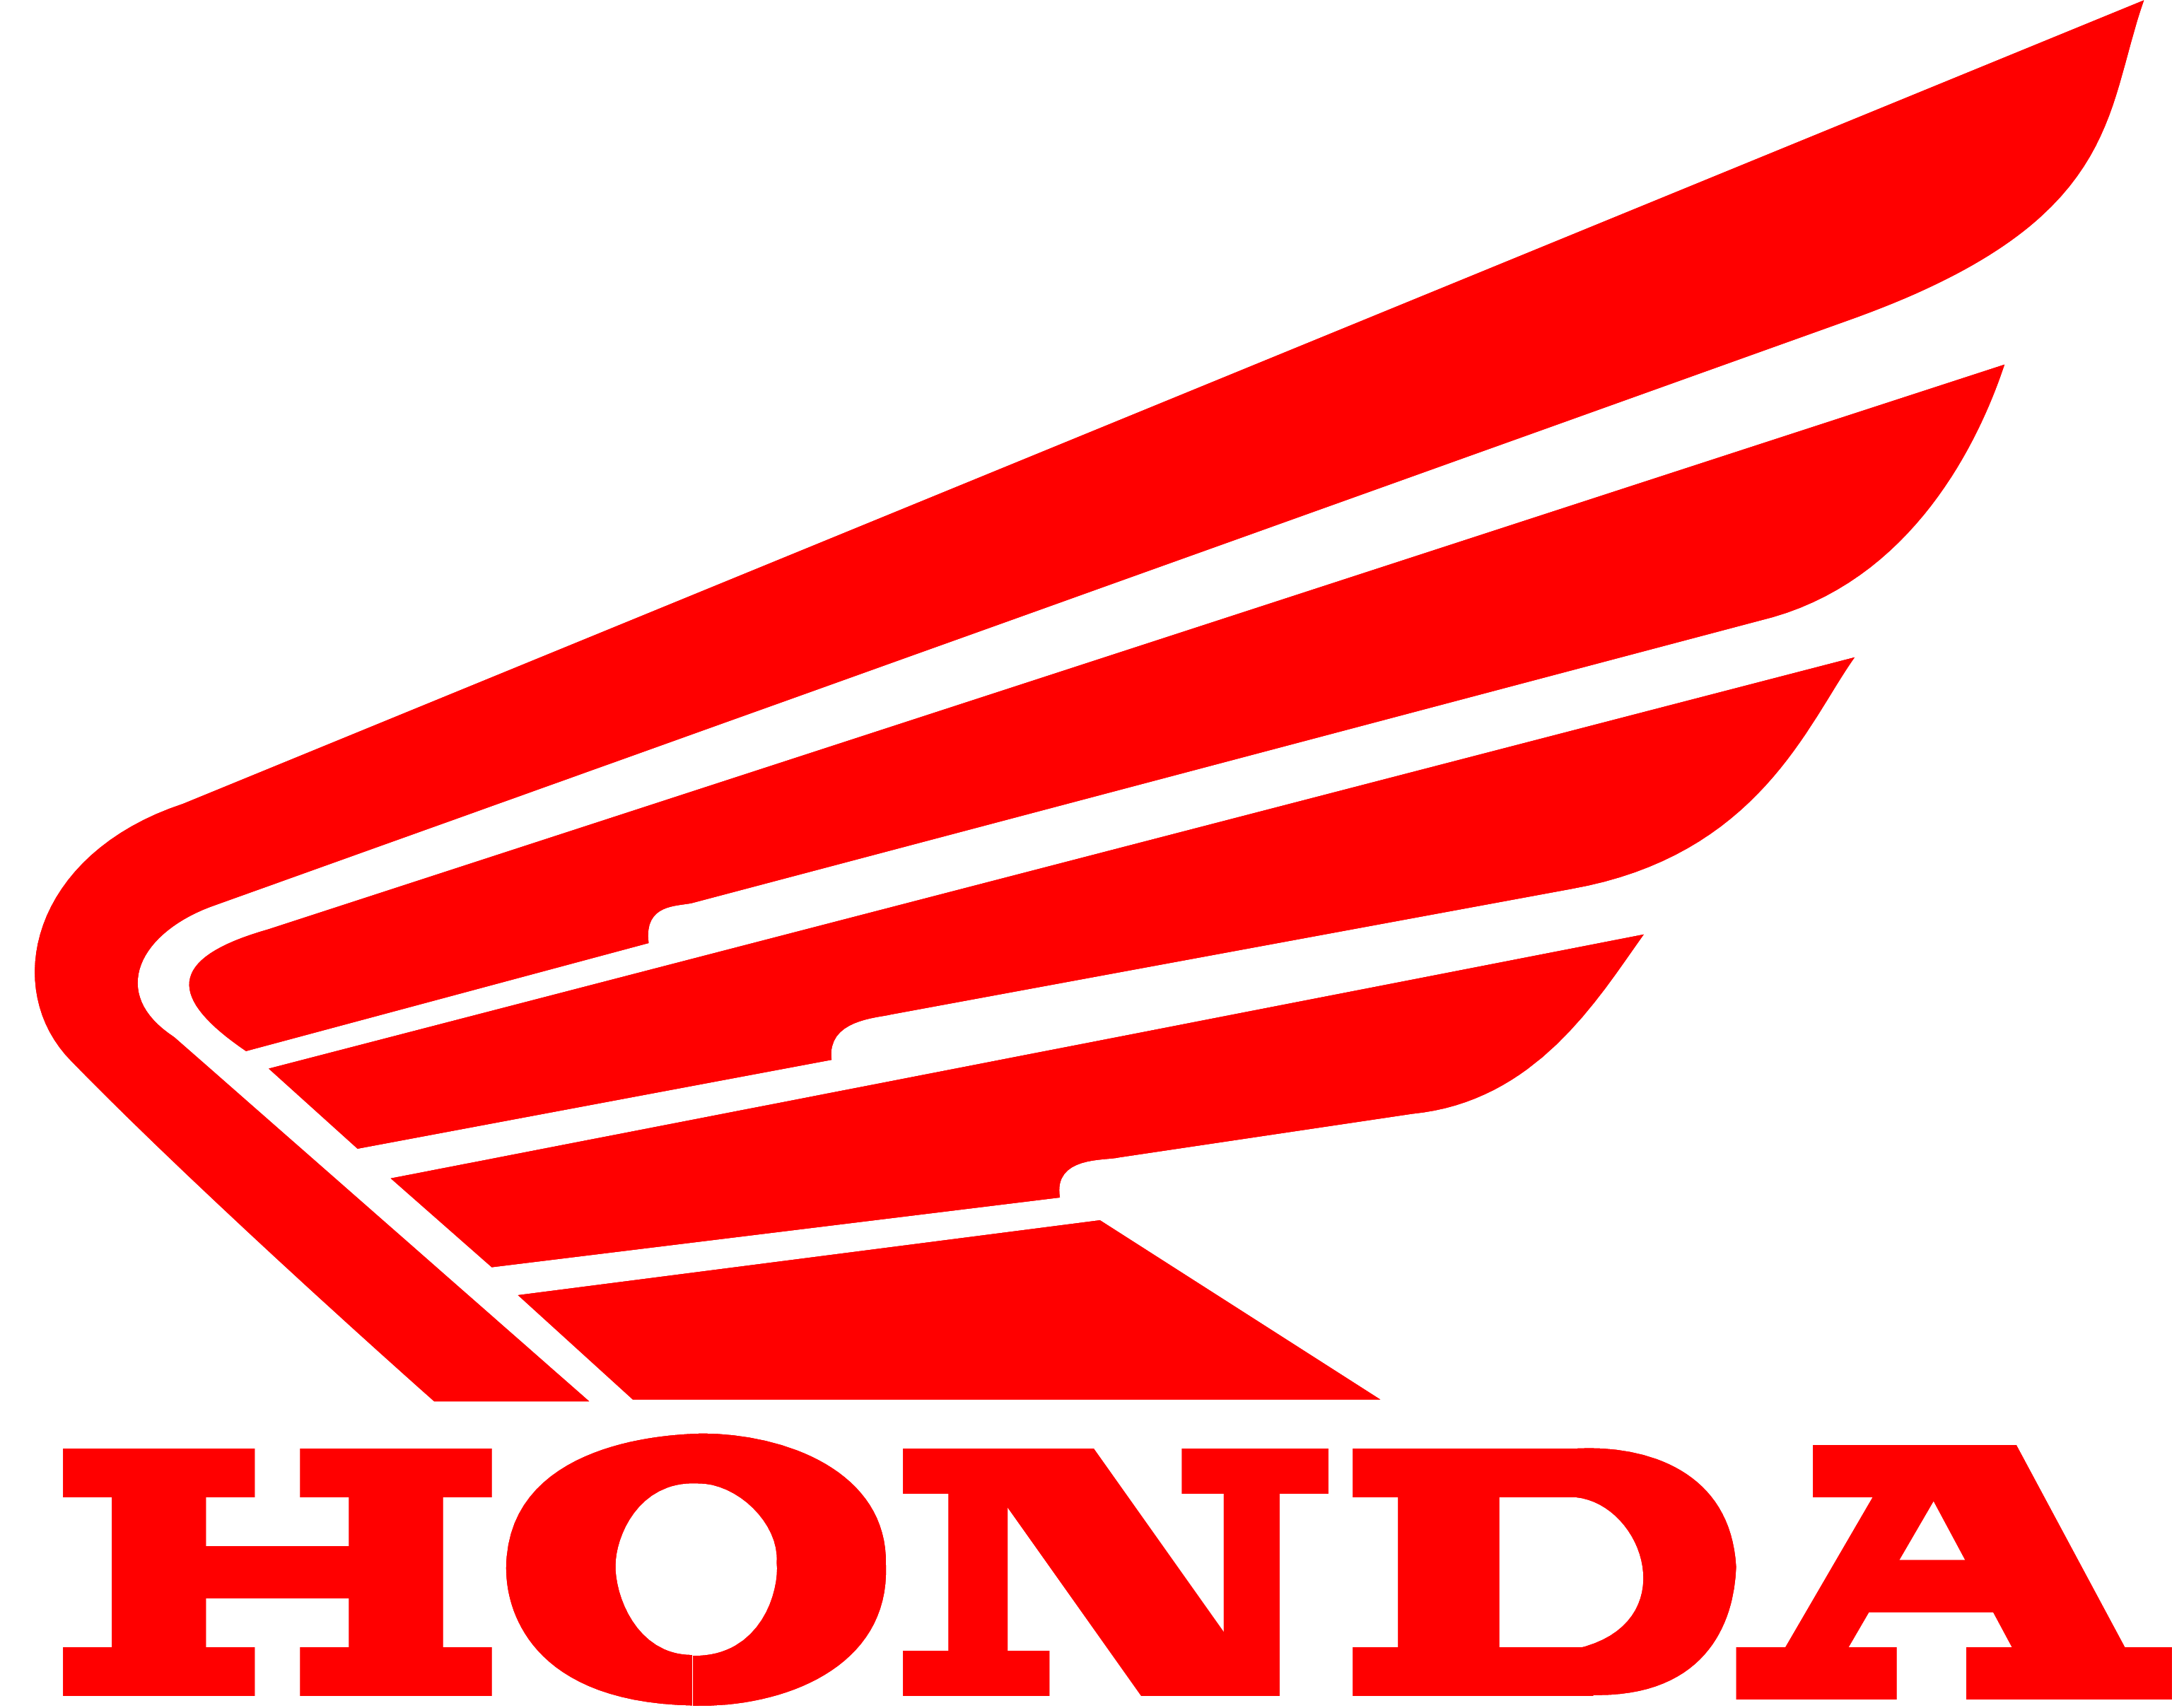 honda logo and Honda. Honda and Logos